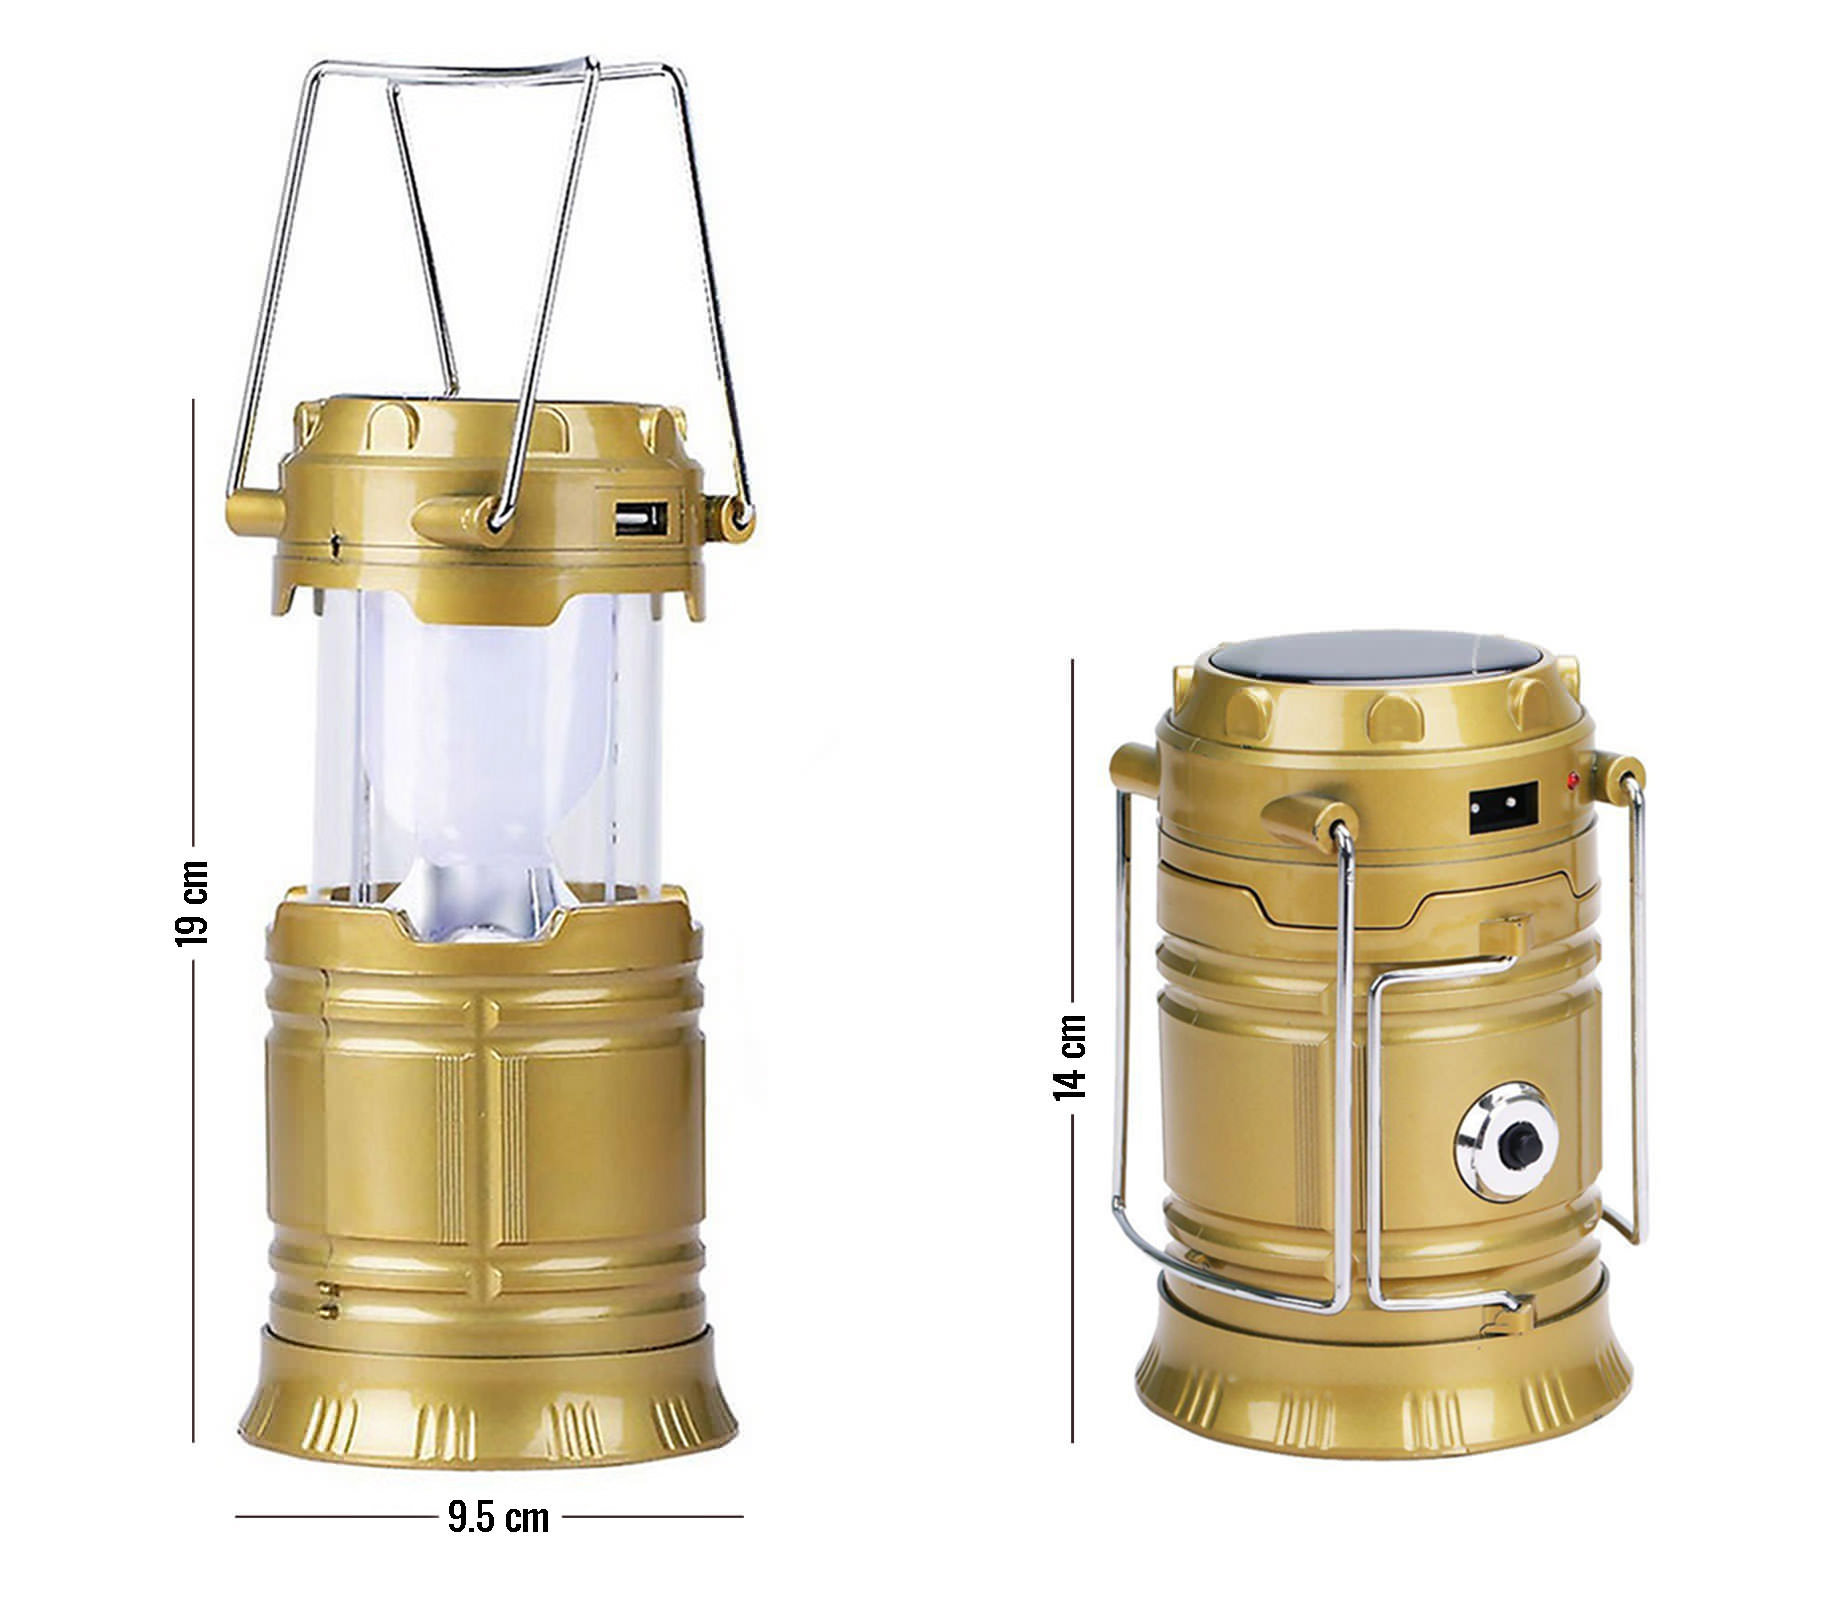 den-leu-6-1-led-rechareable-camping-lantern-jh-5800t-wetrek.vn